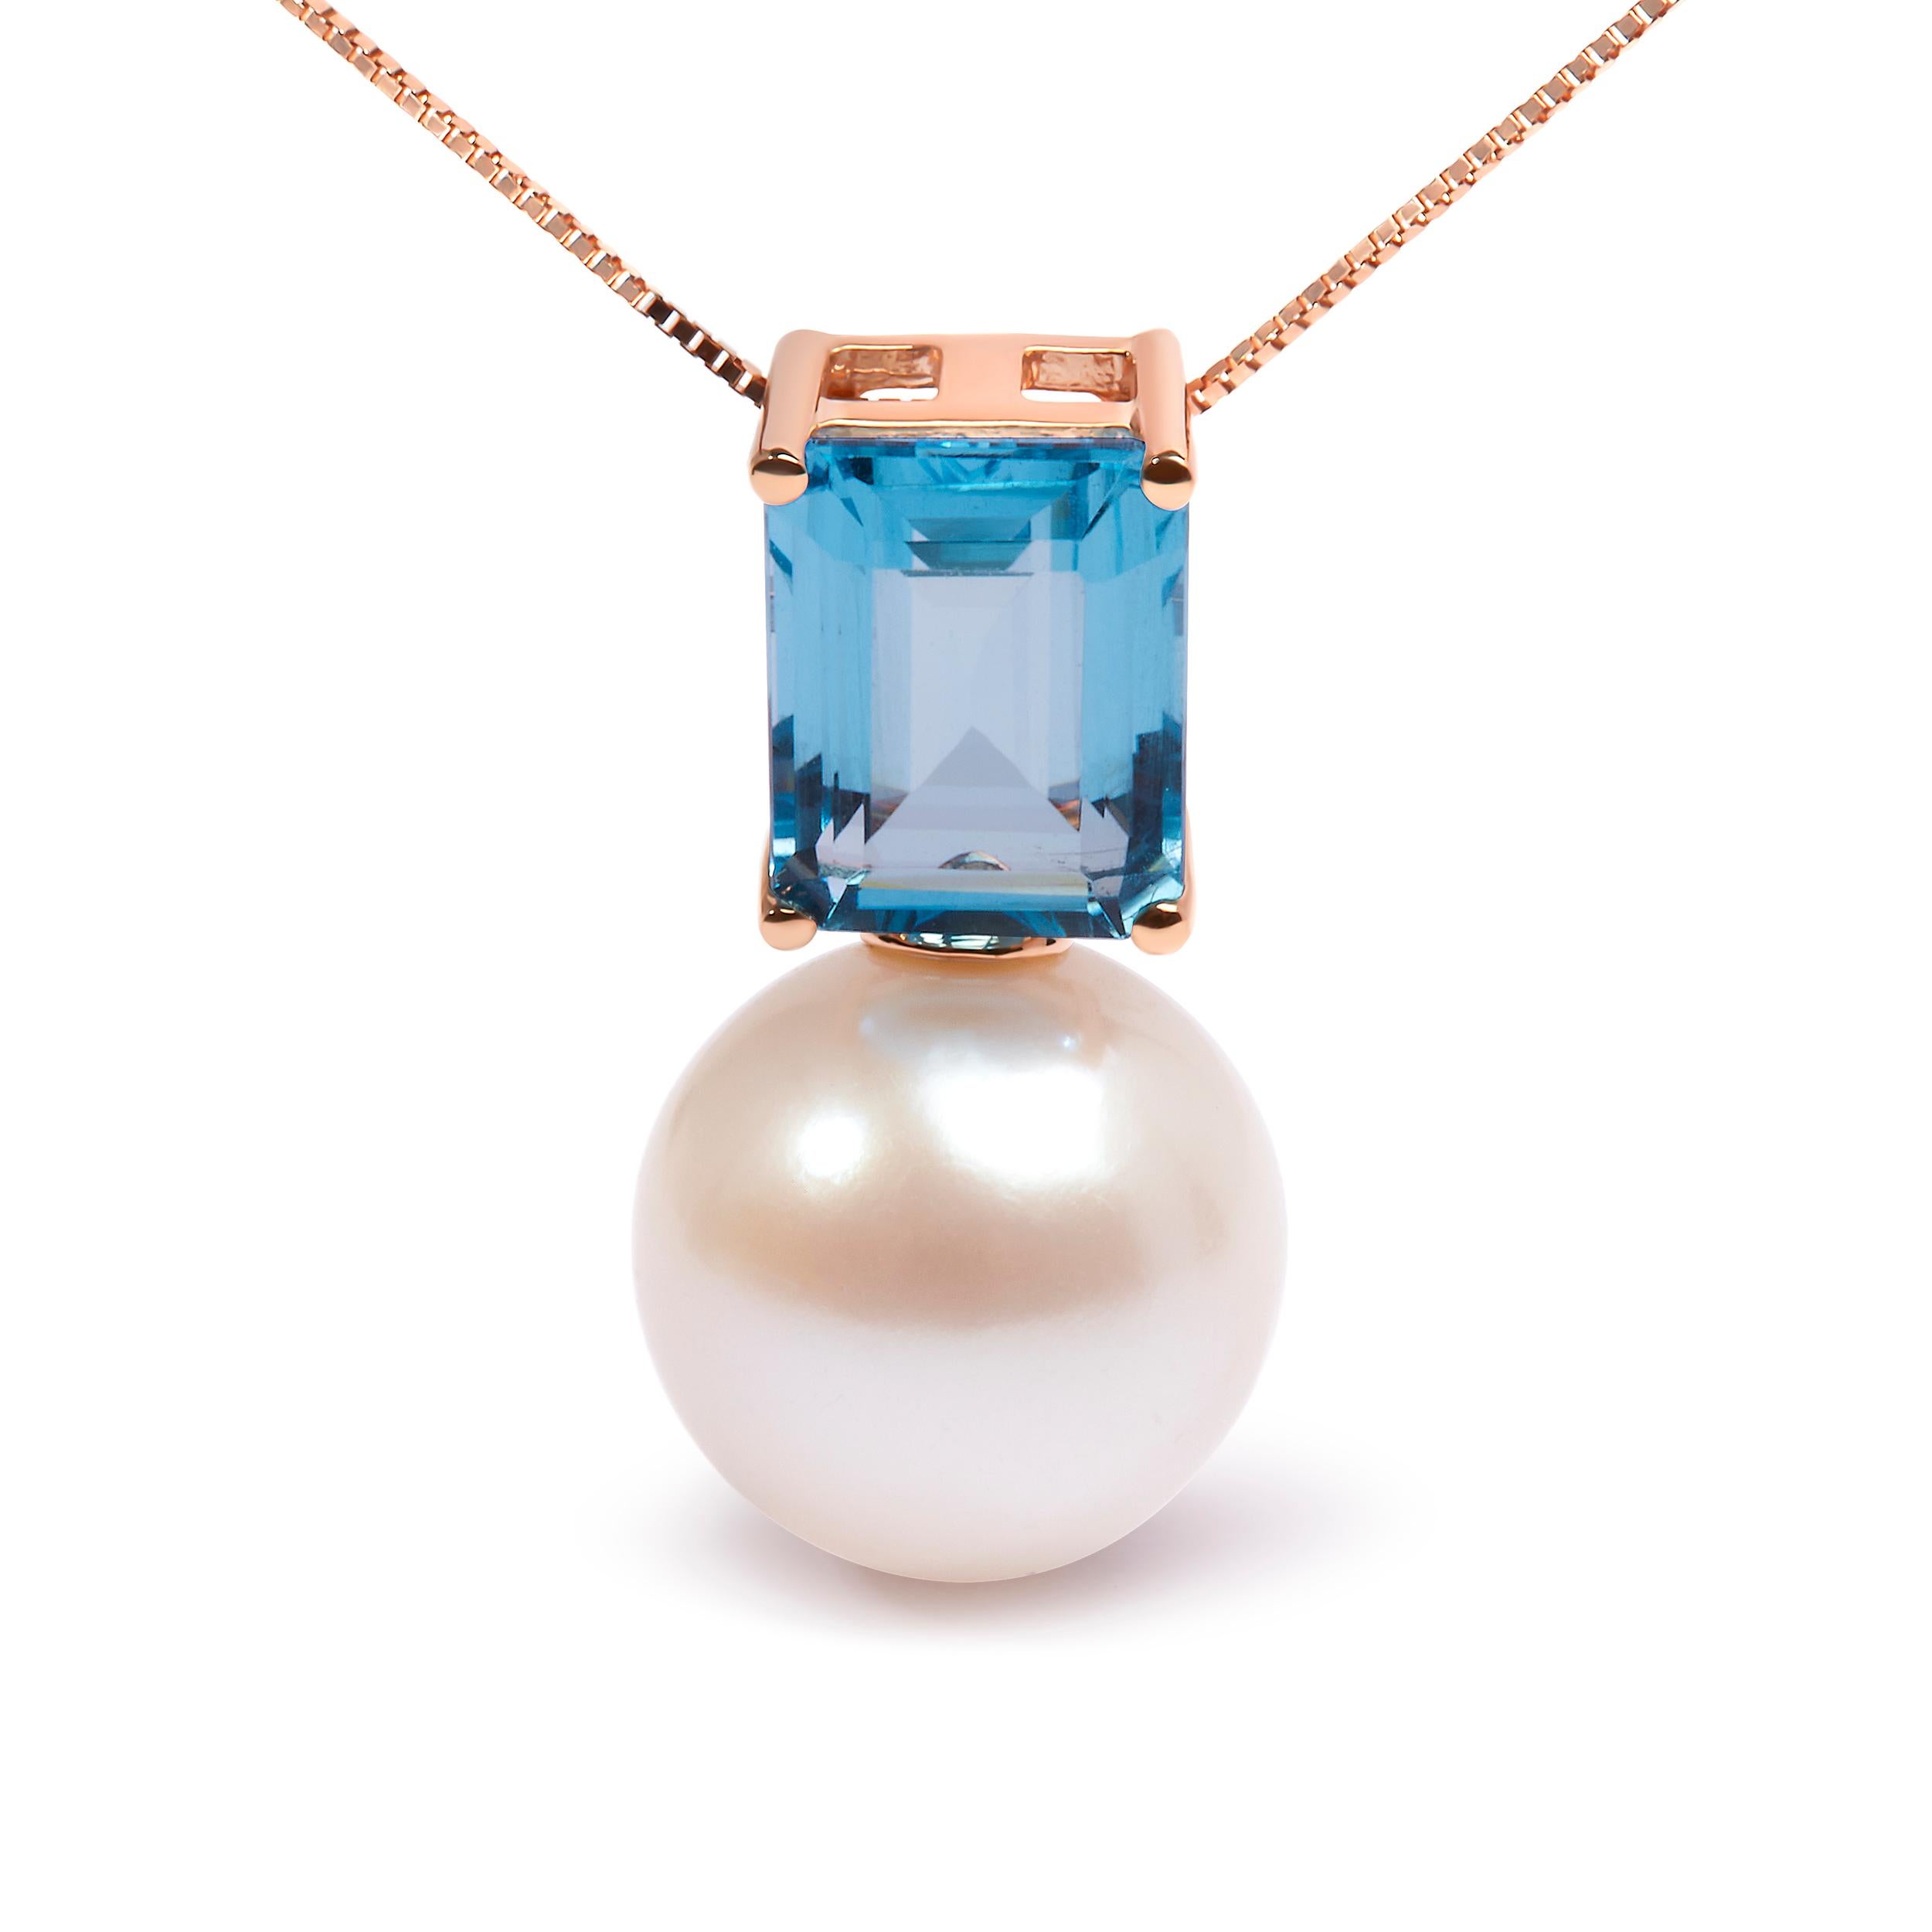 Lassen Sie sich von der ätherischen Schönheit dieser exquisiten Anhänger-Halskette verzaubern. Er ist aus 14-karätigem Roségold gefertigt und besticht durch eine 11 mm große Süßwasserperle, die einen strahlenden Glanz versprüht. Diese Perle wird von